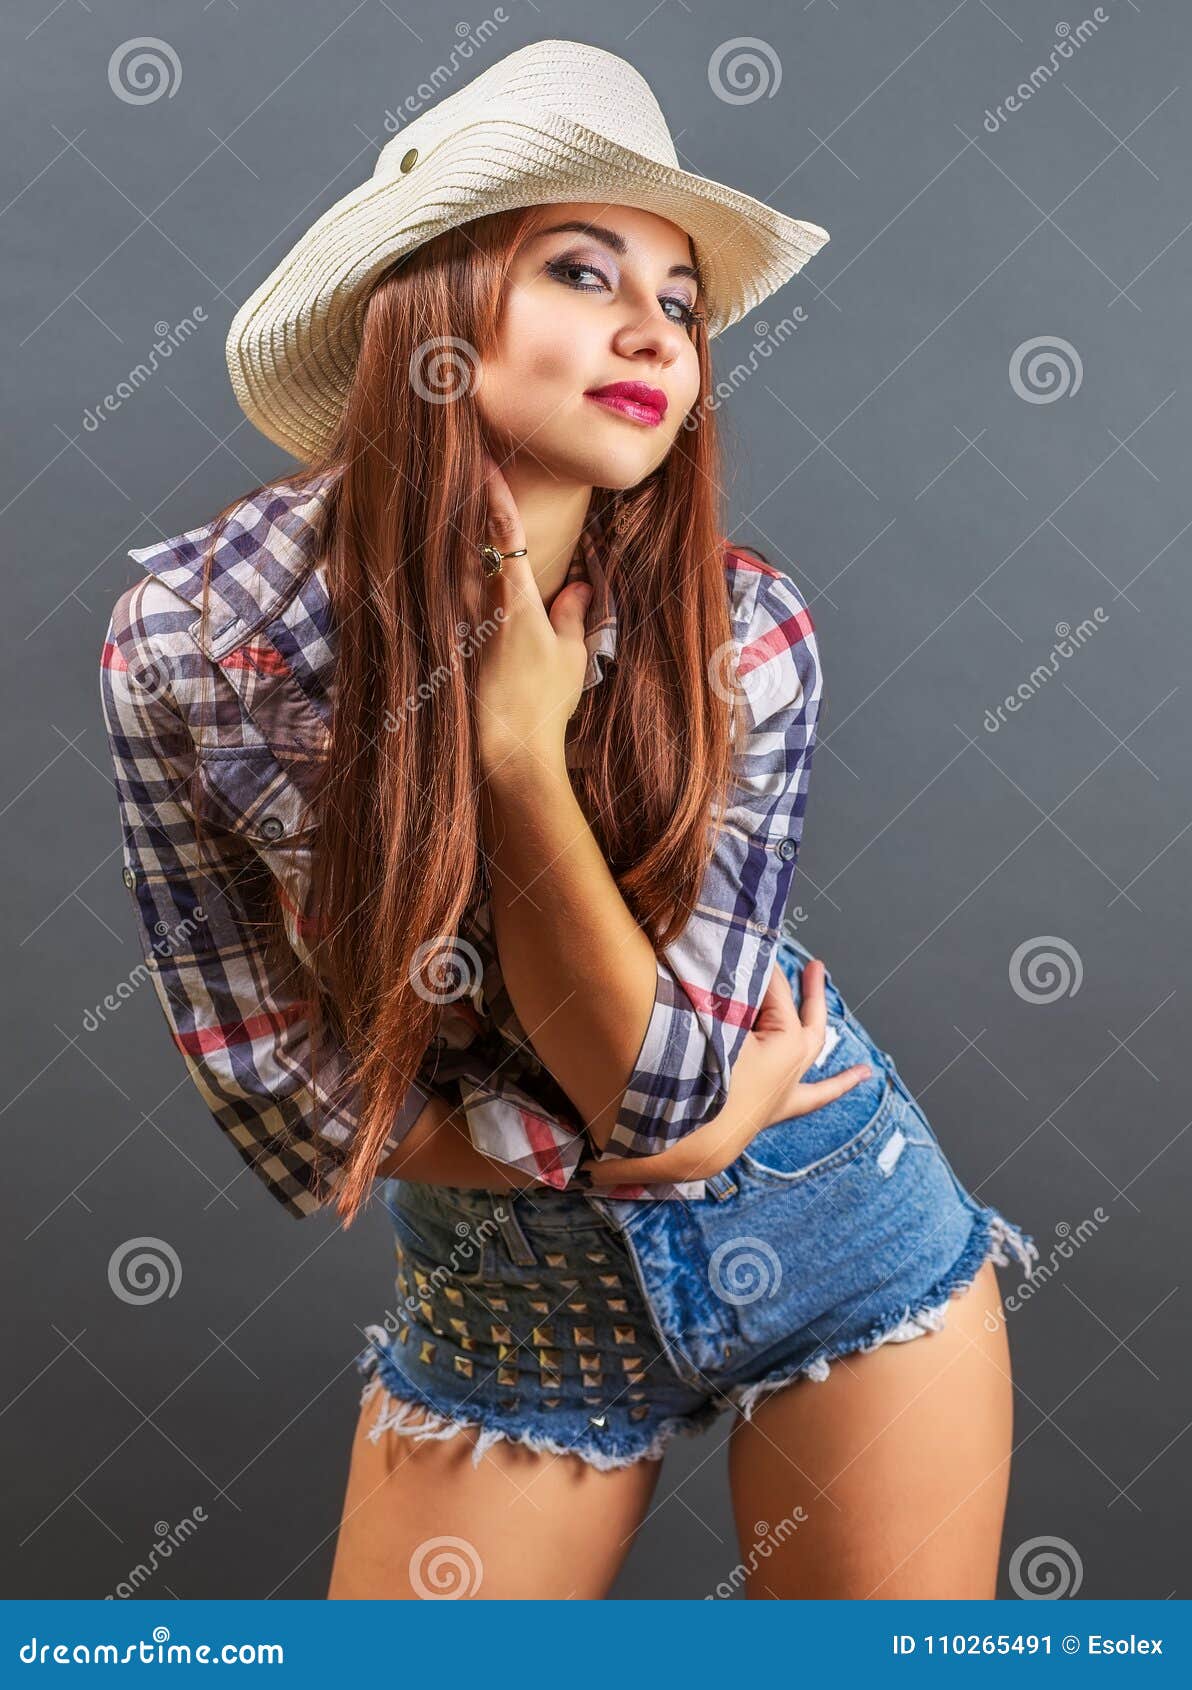 Straw Cowboy Hat Sexy